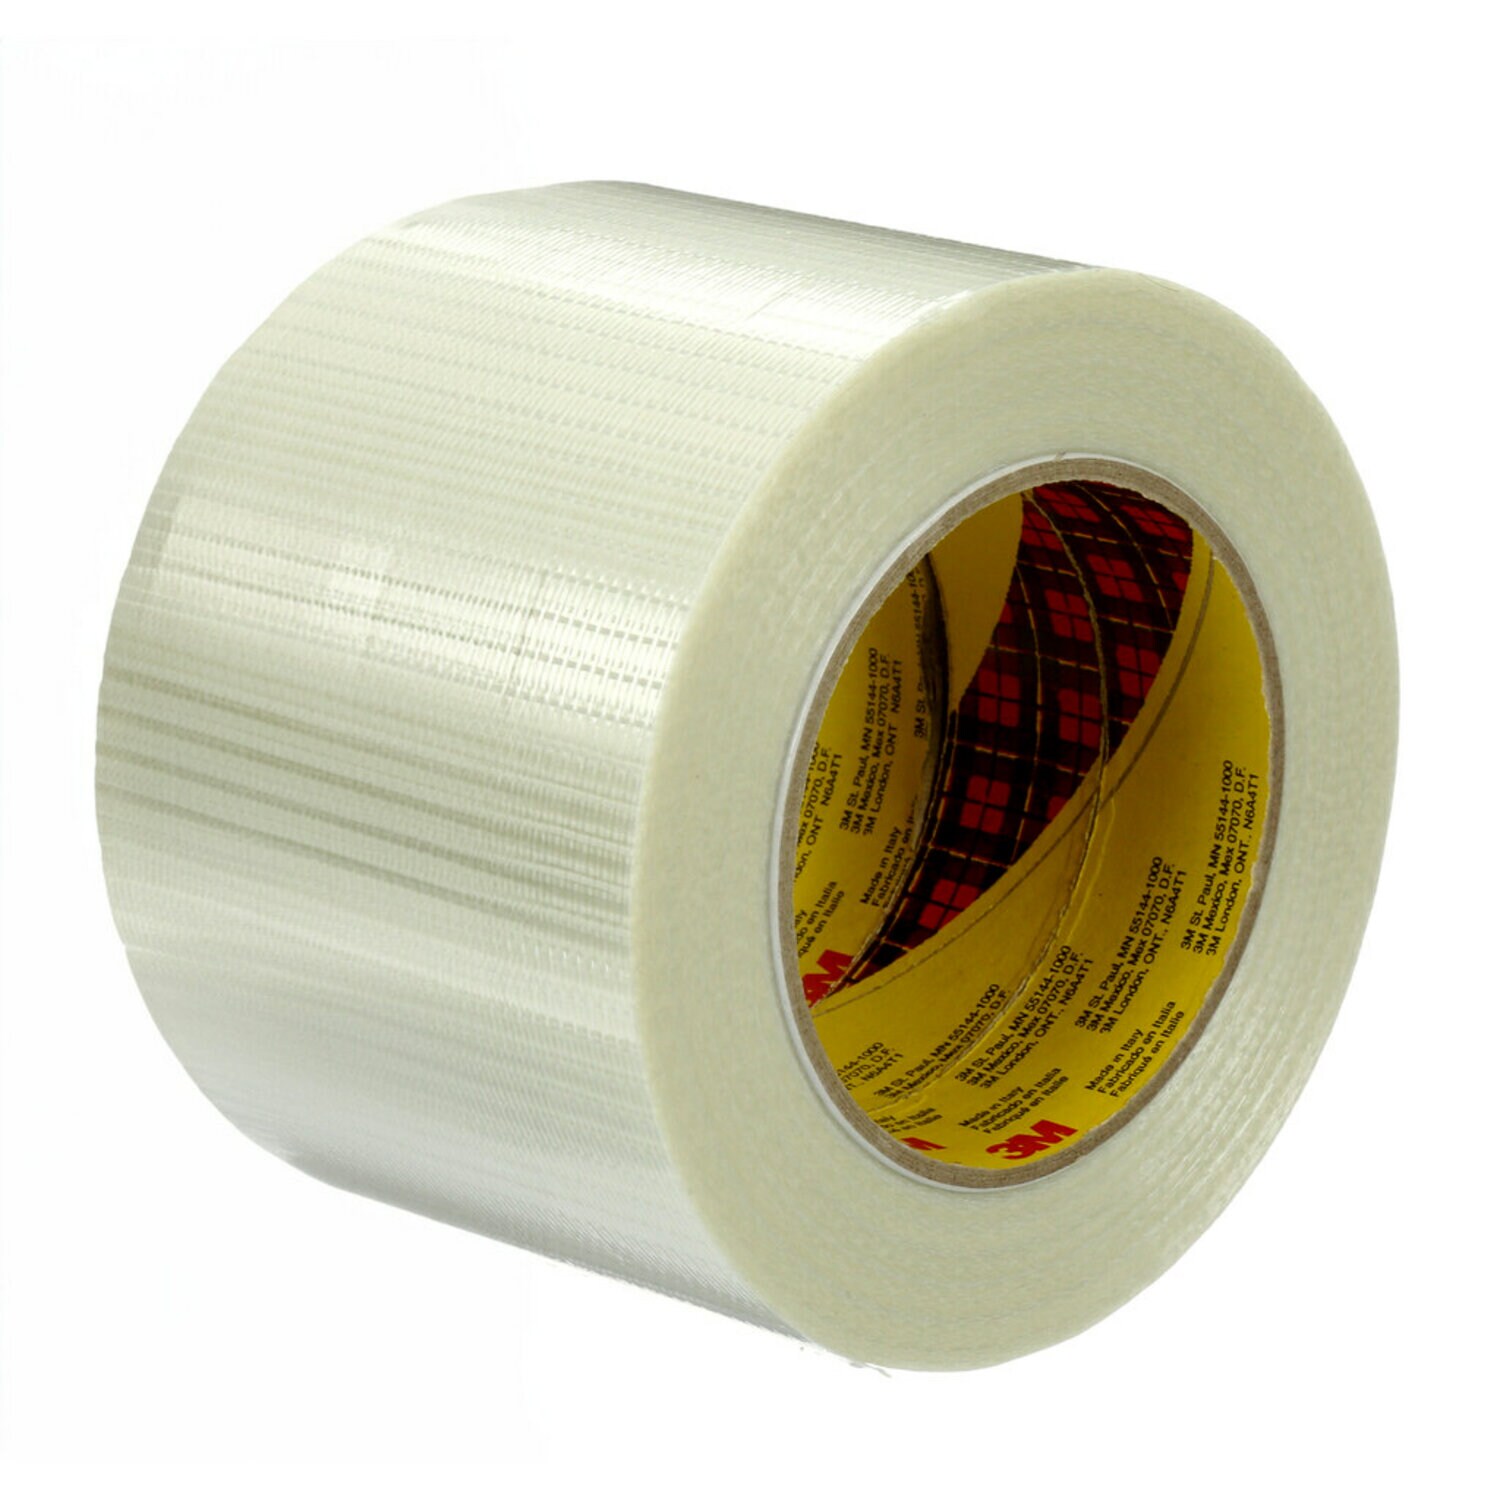 7000137063 - Scotch Bi-Directional Filament Tape 8959, Clear, 4 in x 60 yd, 5.7 mil,
12 rolls per case